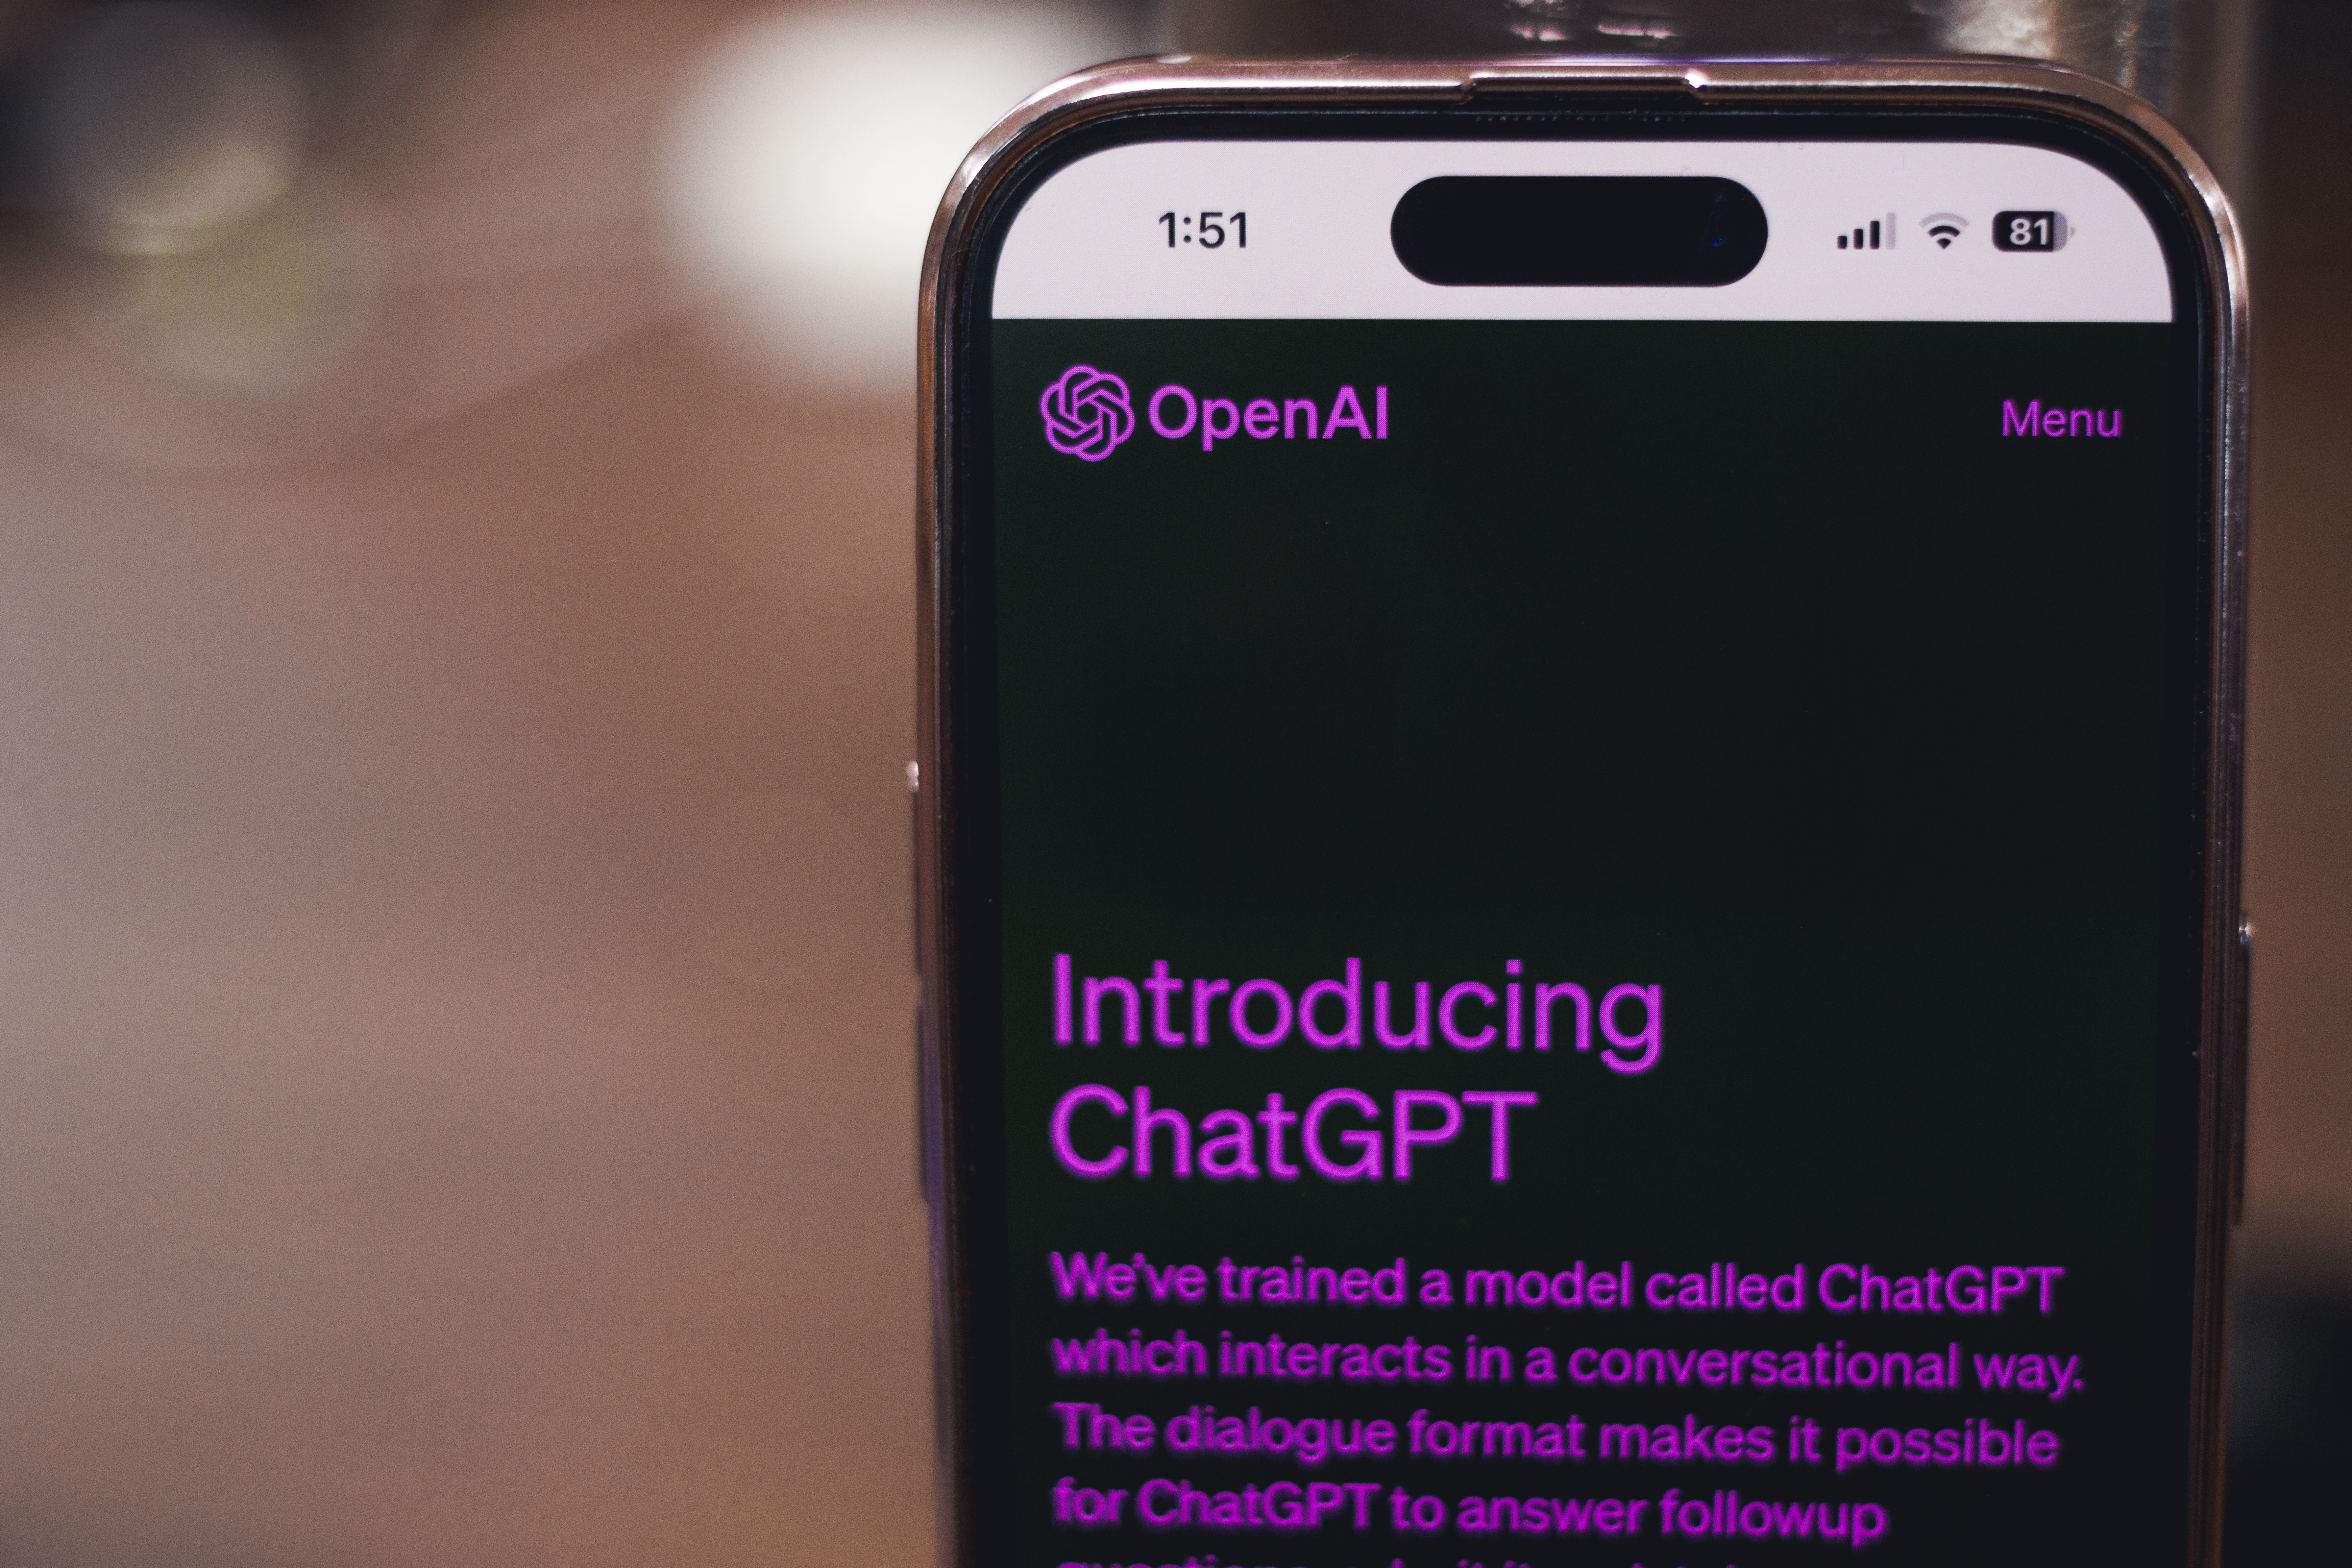 Using ChatGPT by OpenAI